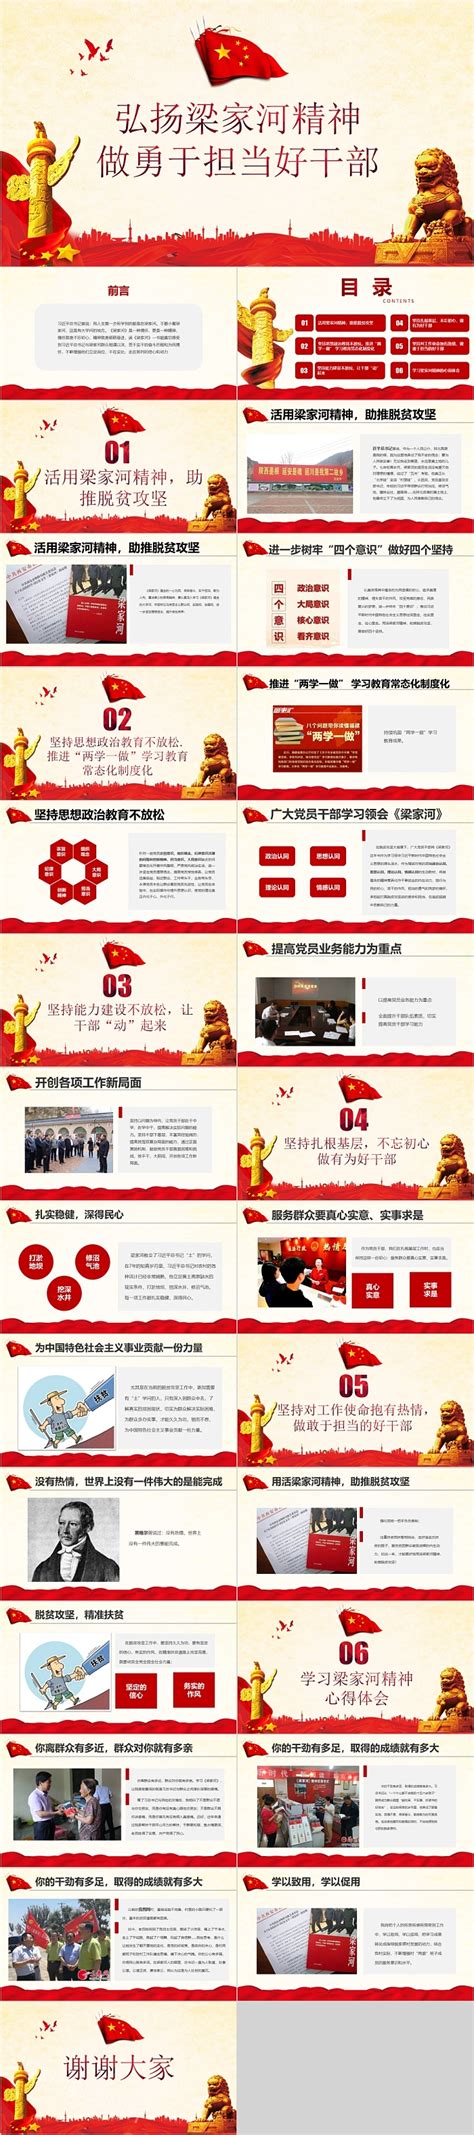 精致创意弘扬社会正气倡导文明海报设计图片下载_红动中国